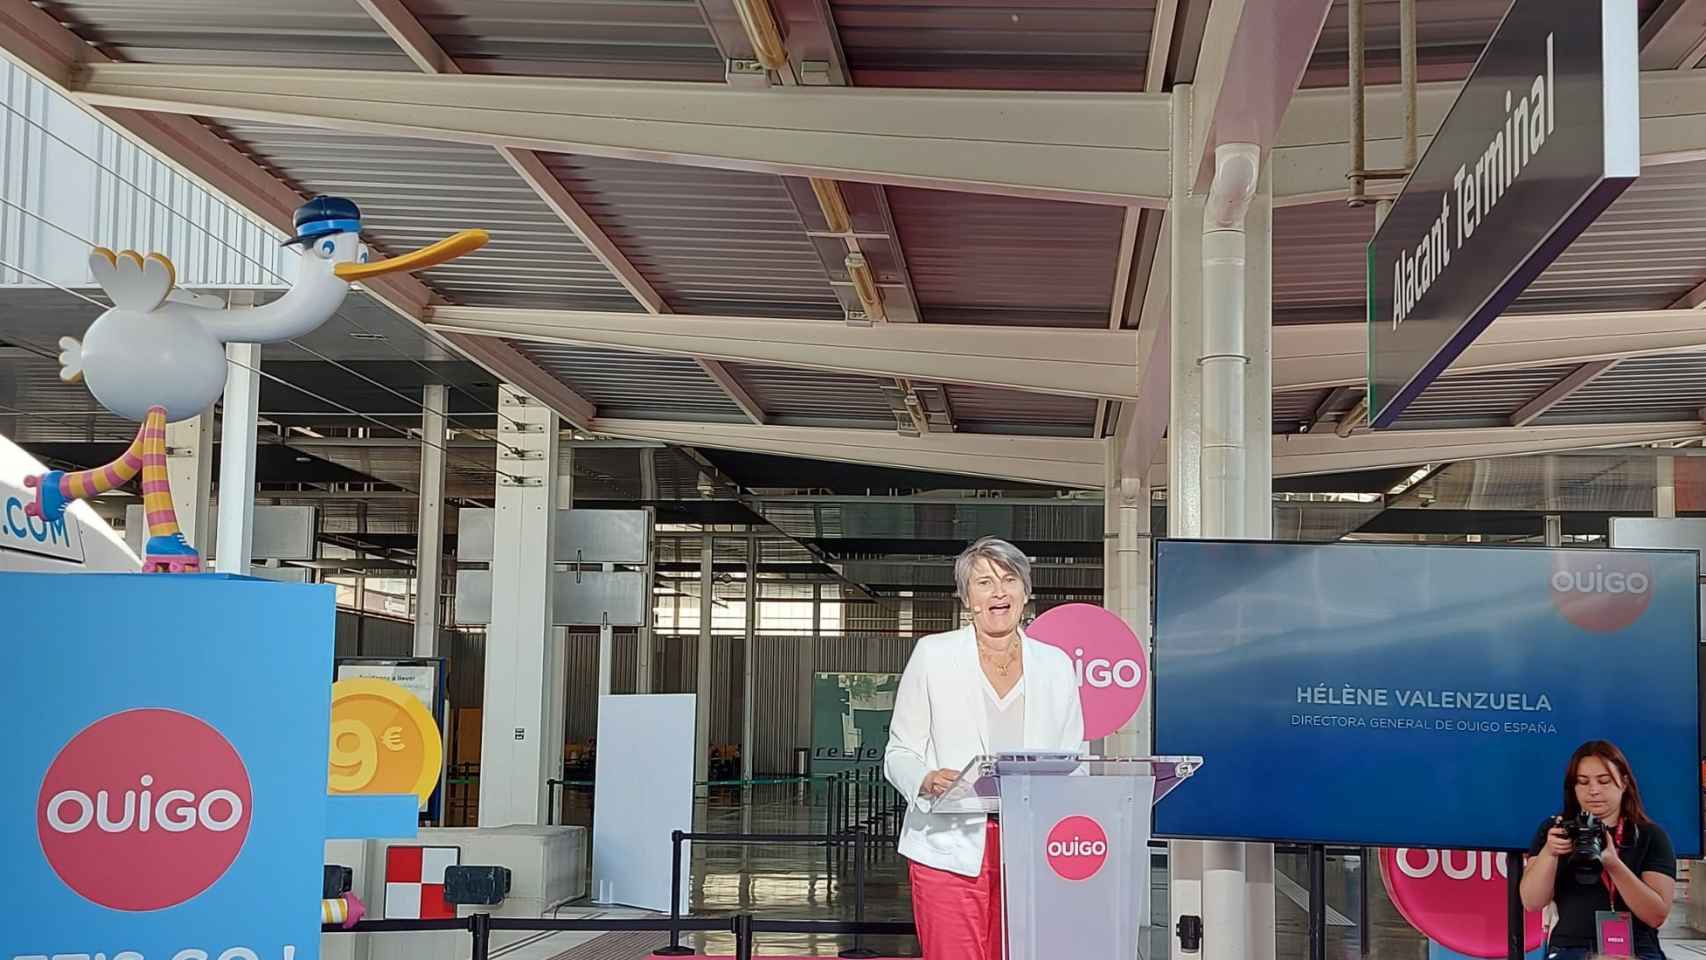 Hélène Valenzuela, directora general de Ouigo España, durante el discurso inaugural de la ruta en Alicante.